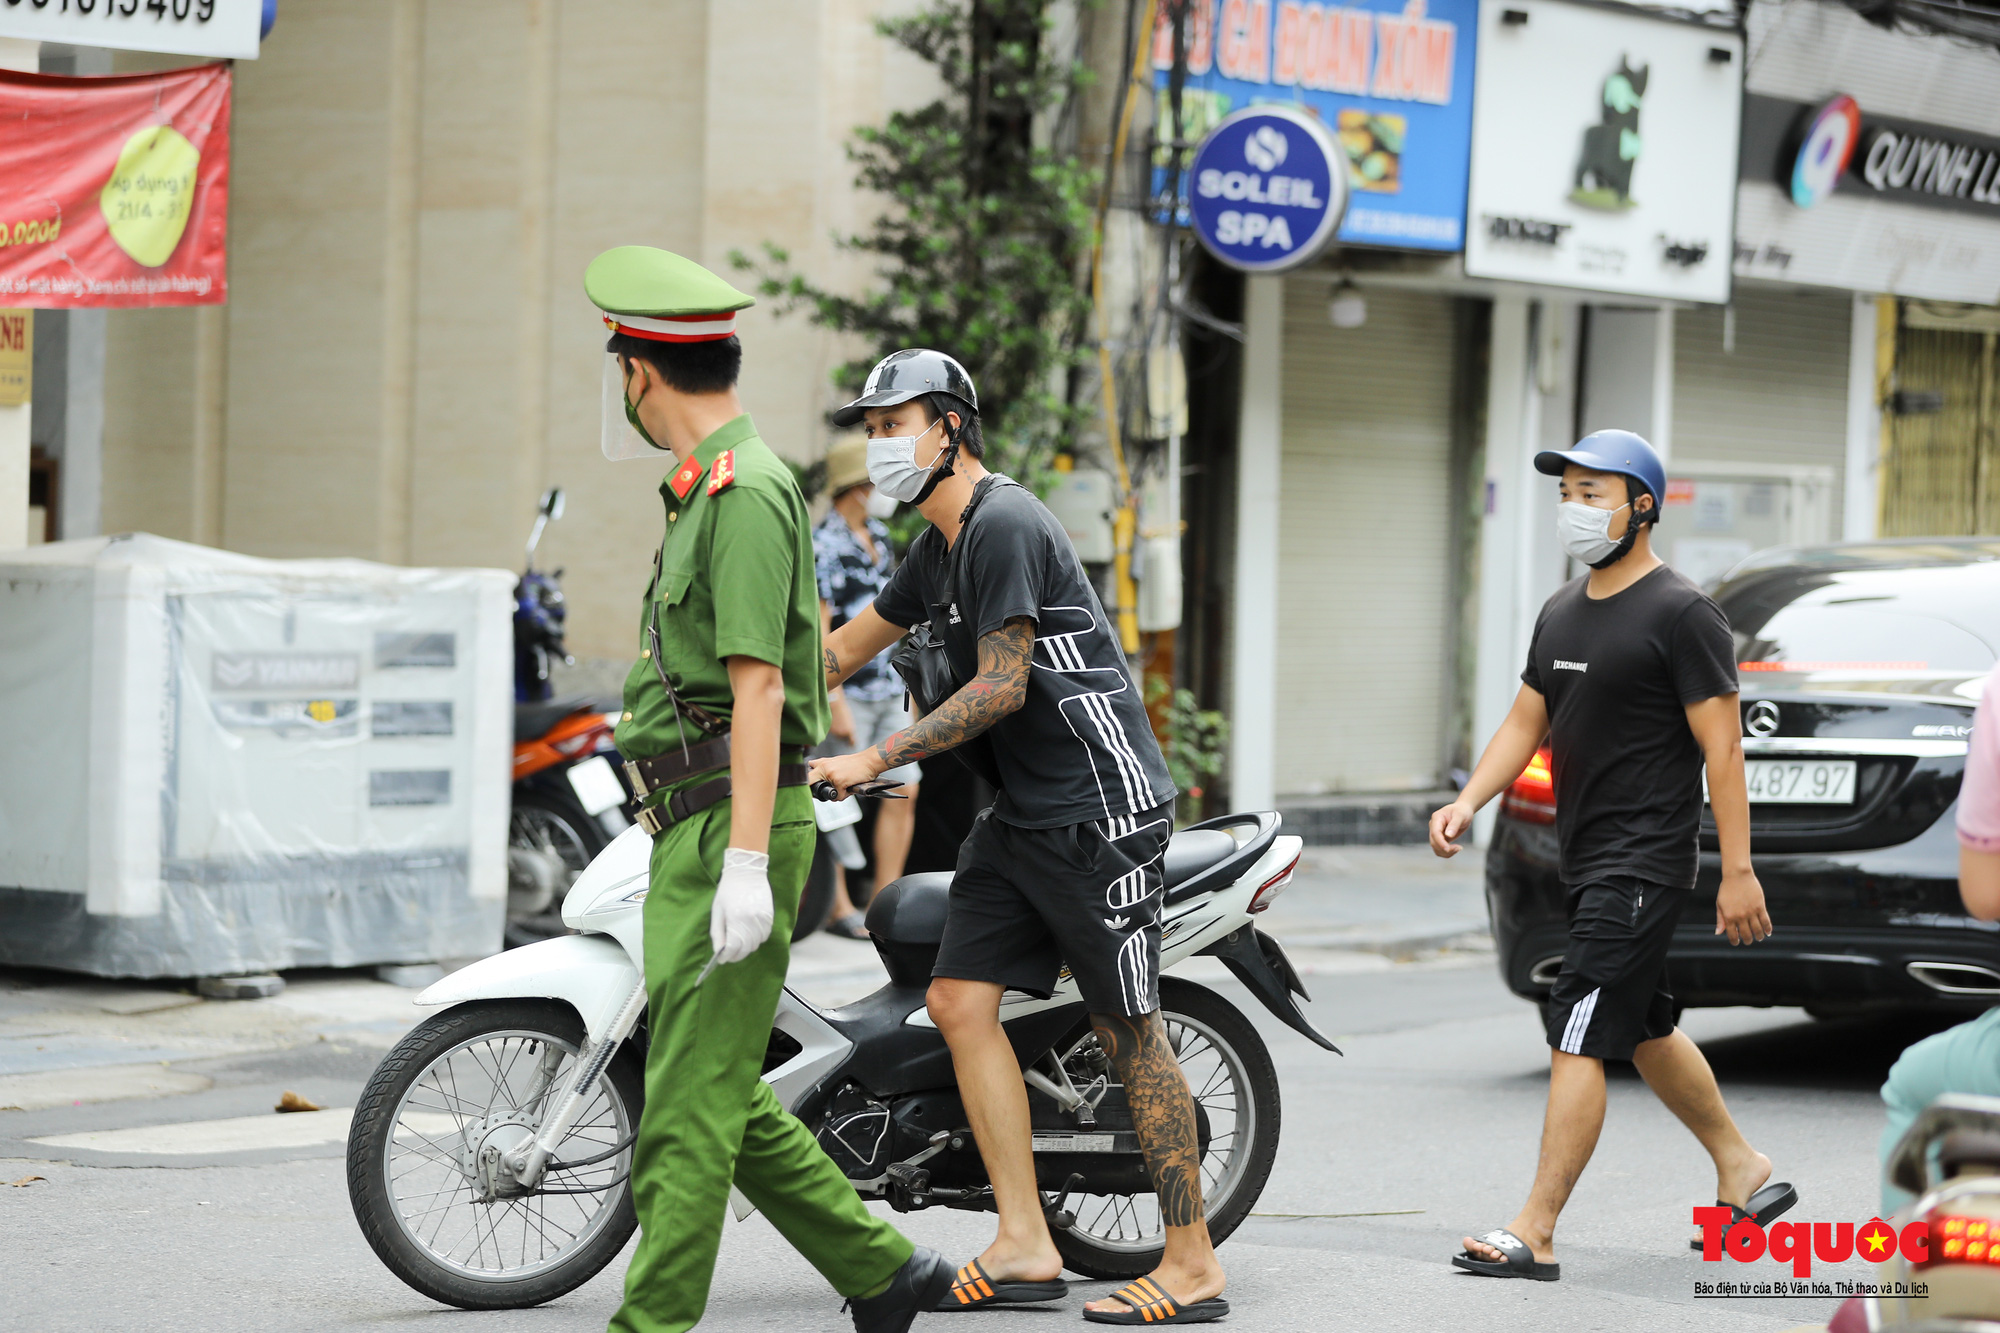 Công an quận Hoàn Kiếm triển khai tổ công tác đặc biệt kiểm soát giấy đi đường, nhiều trường hợp quay đầu bỏ chạy - Ảnh 9.